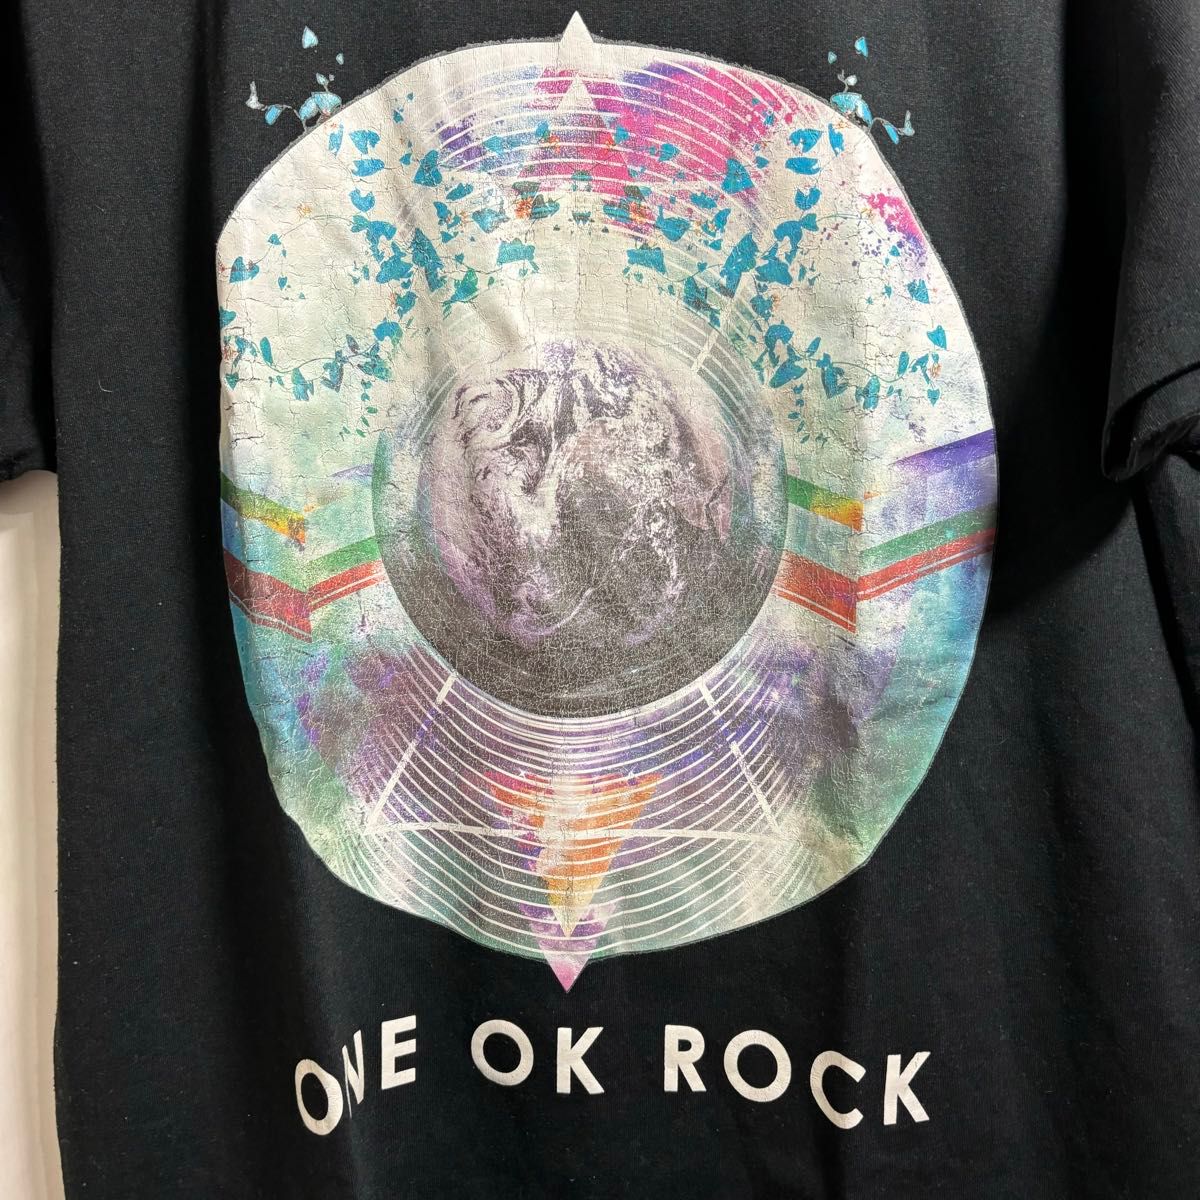 ワンオクロック 2015 35xxxv JAPAN TOUR 幕張 黒 半袖Tシャツ Lサイズ ONE OK ROCK